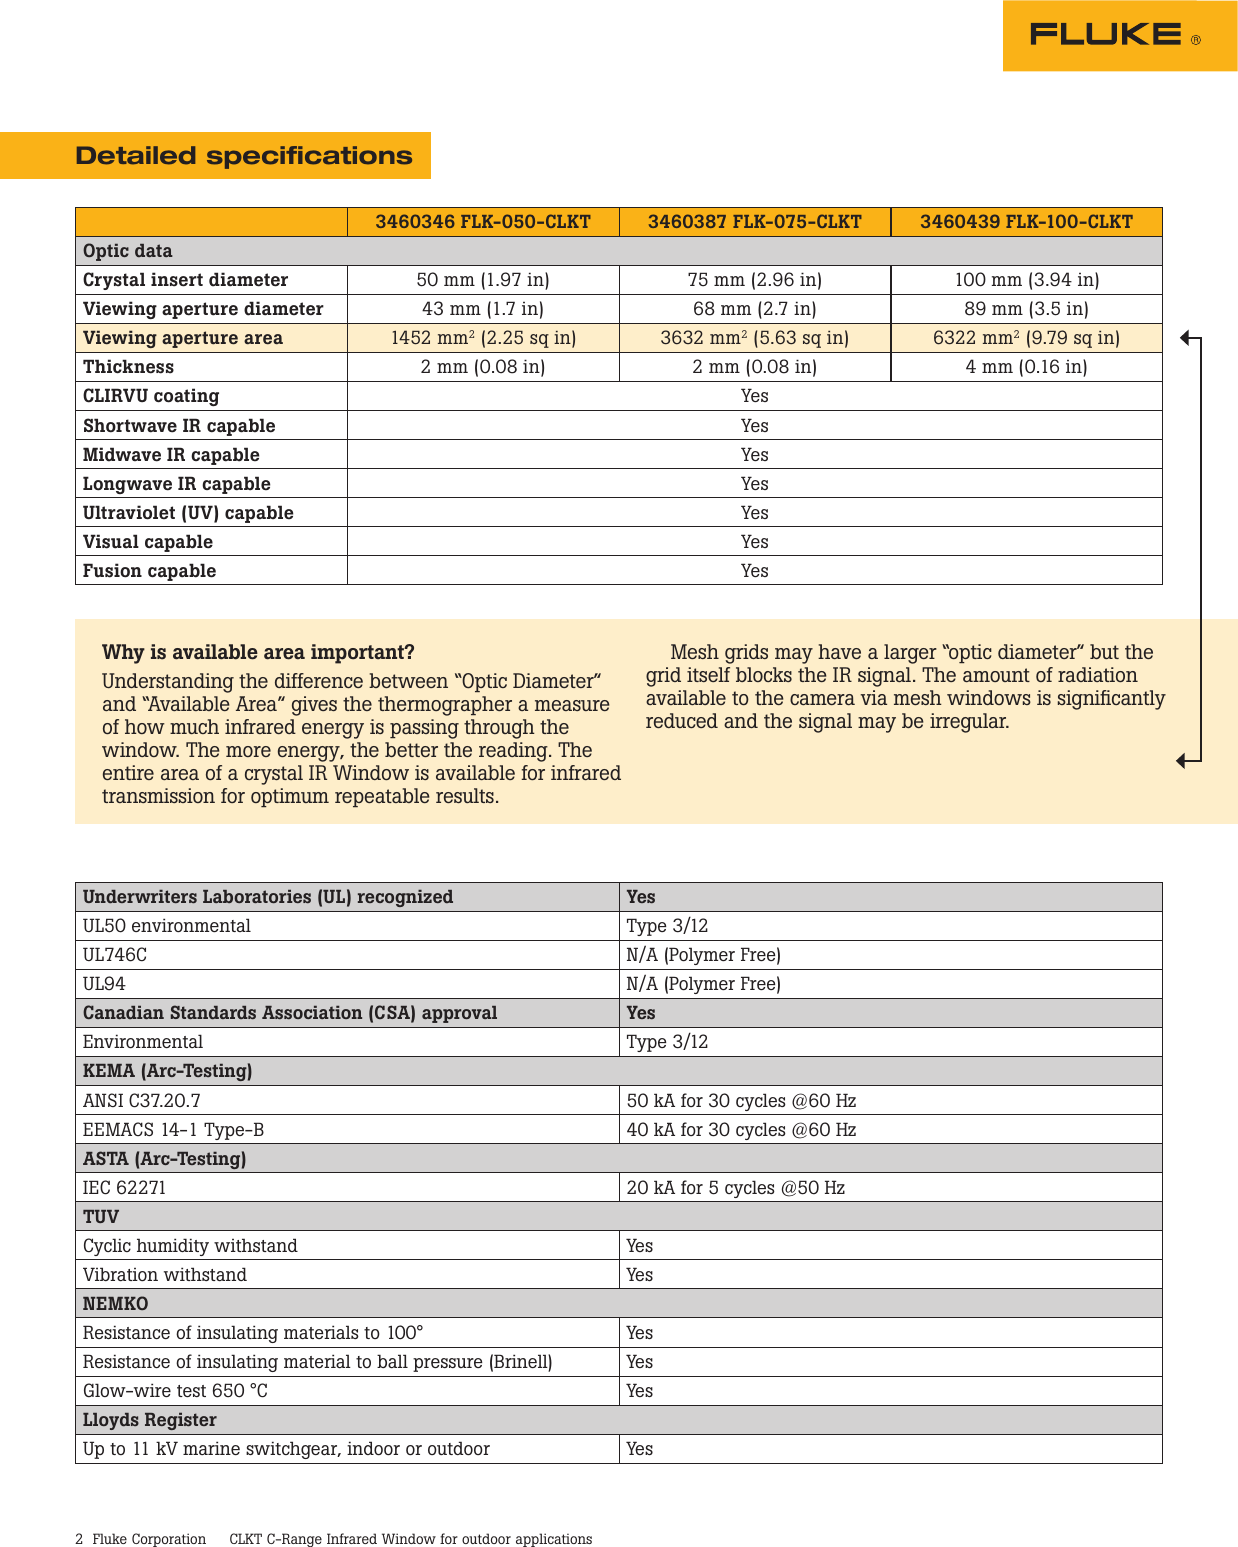 Page 2 of 3 - Fluke CLKT C-Range Infrared Window  Brochure